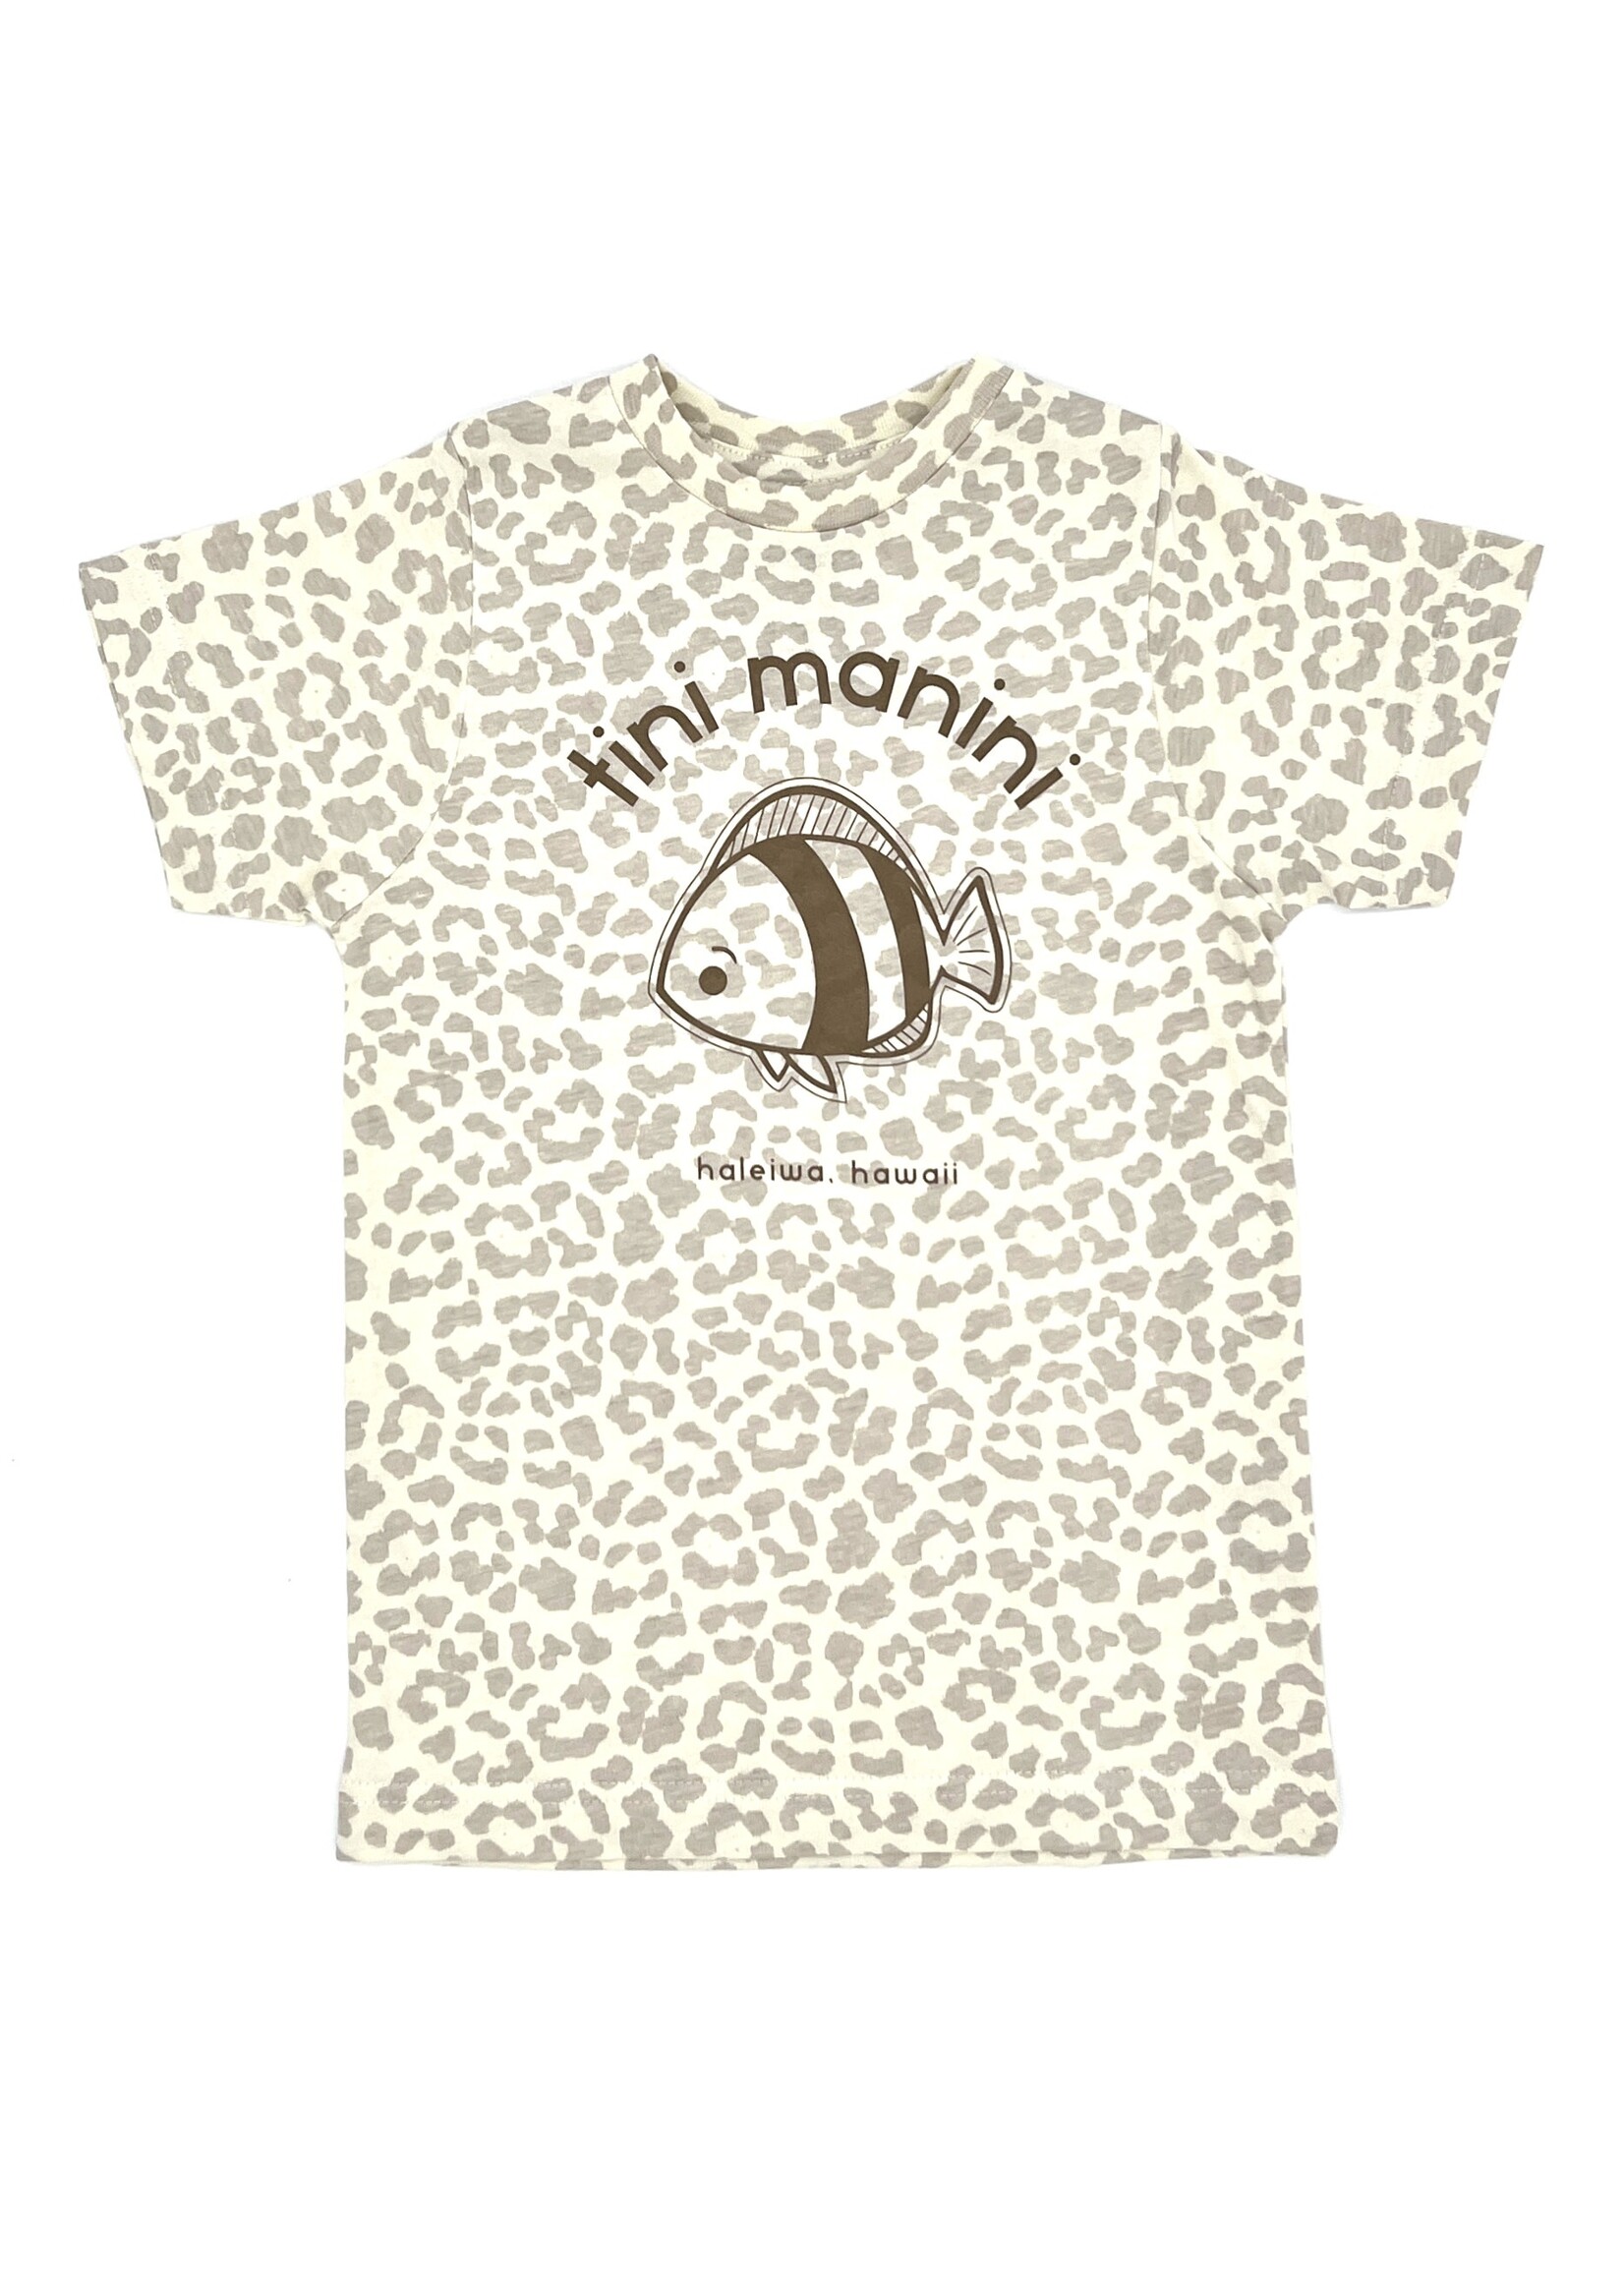 Tini Manini front logo - shirt